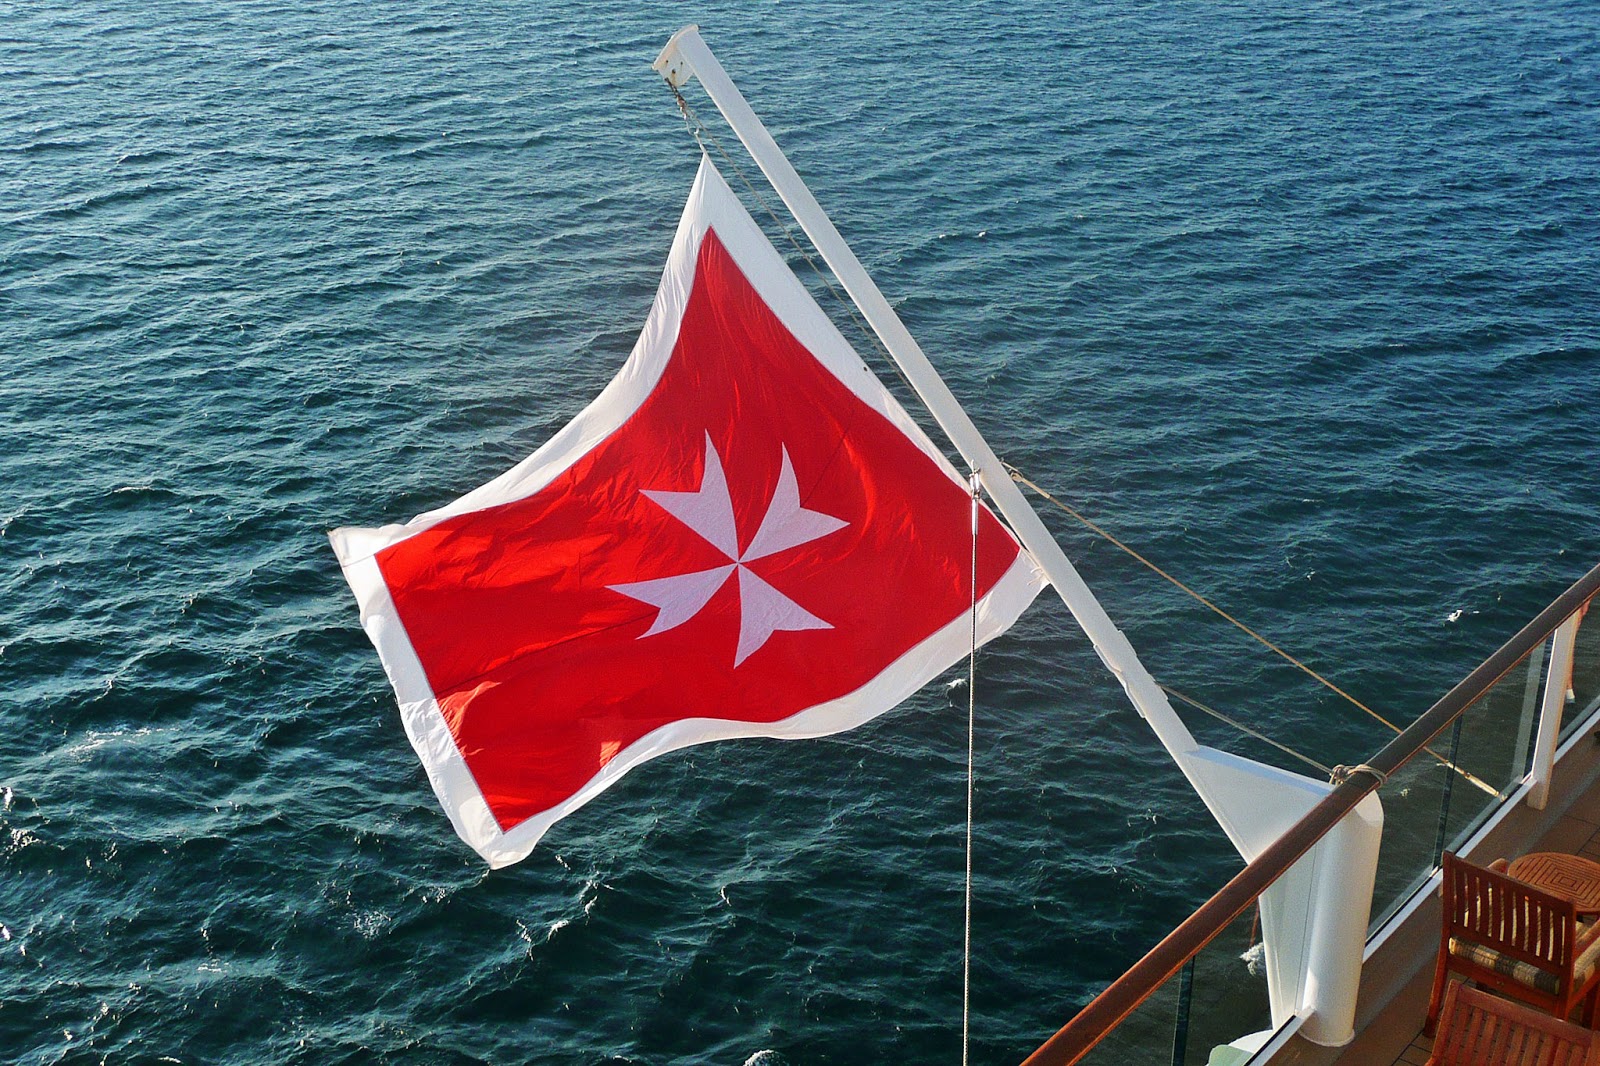 Флаг страны Мальта